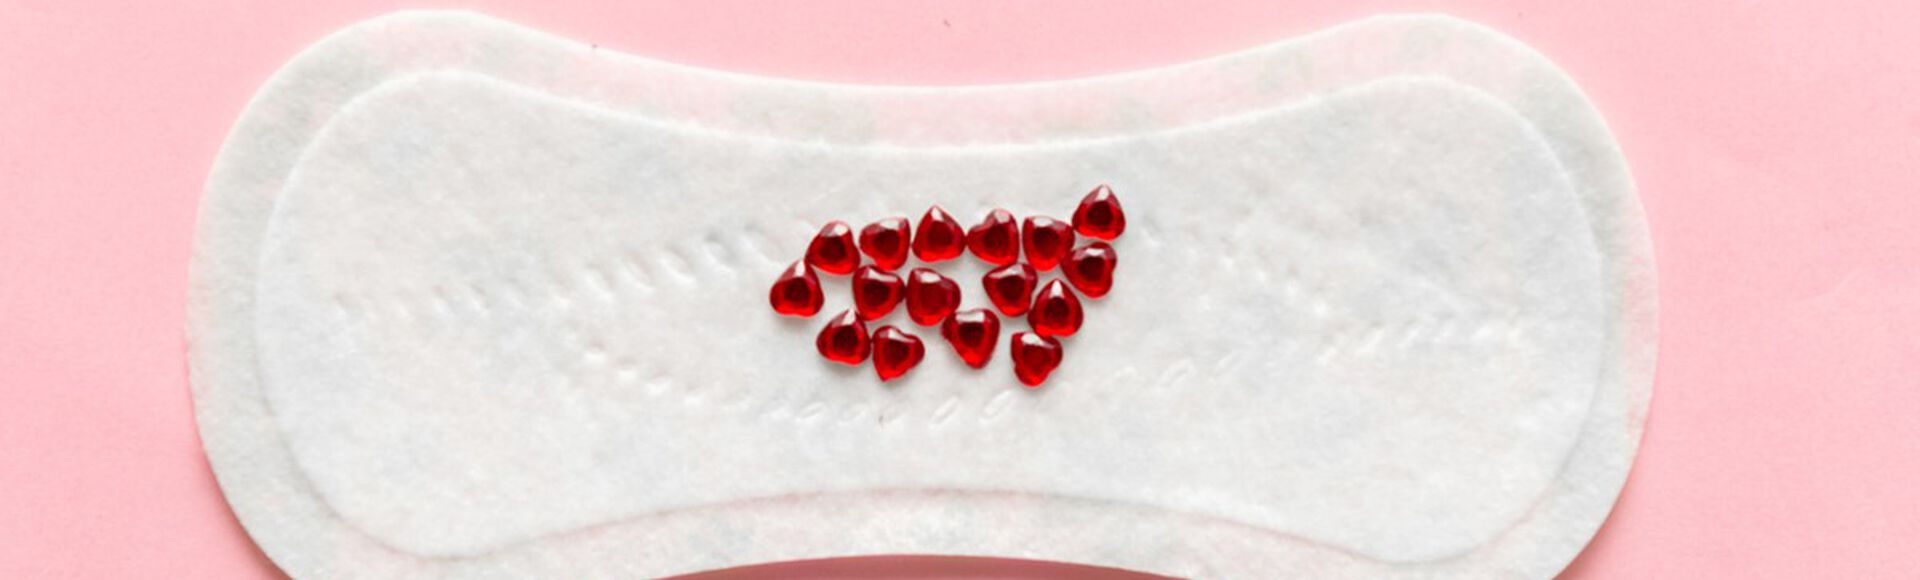 absorvente feminino com gotículas vermelhas imitando sangue de nidação